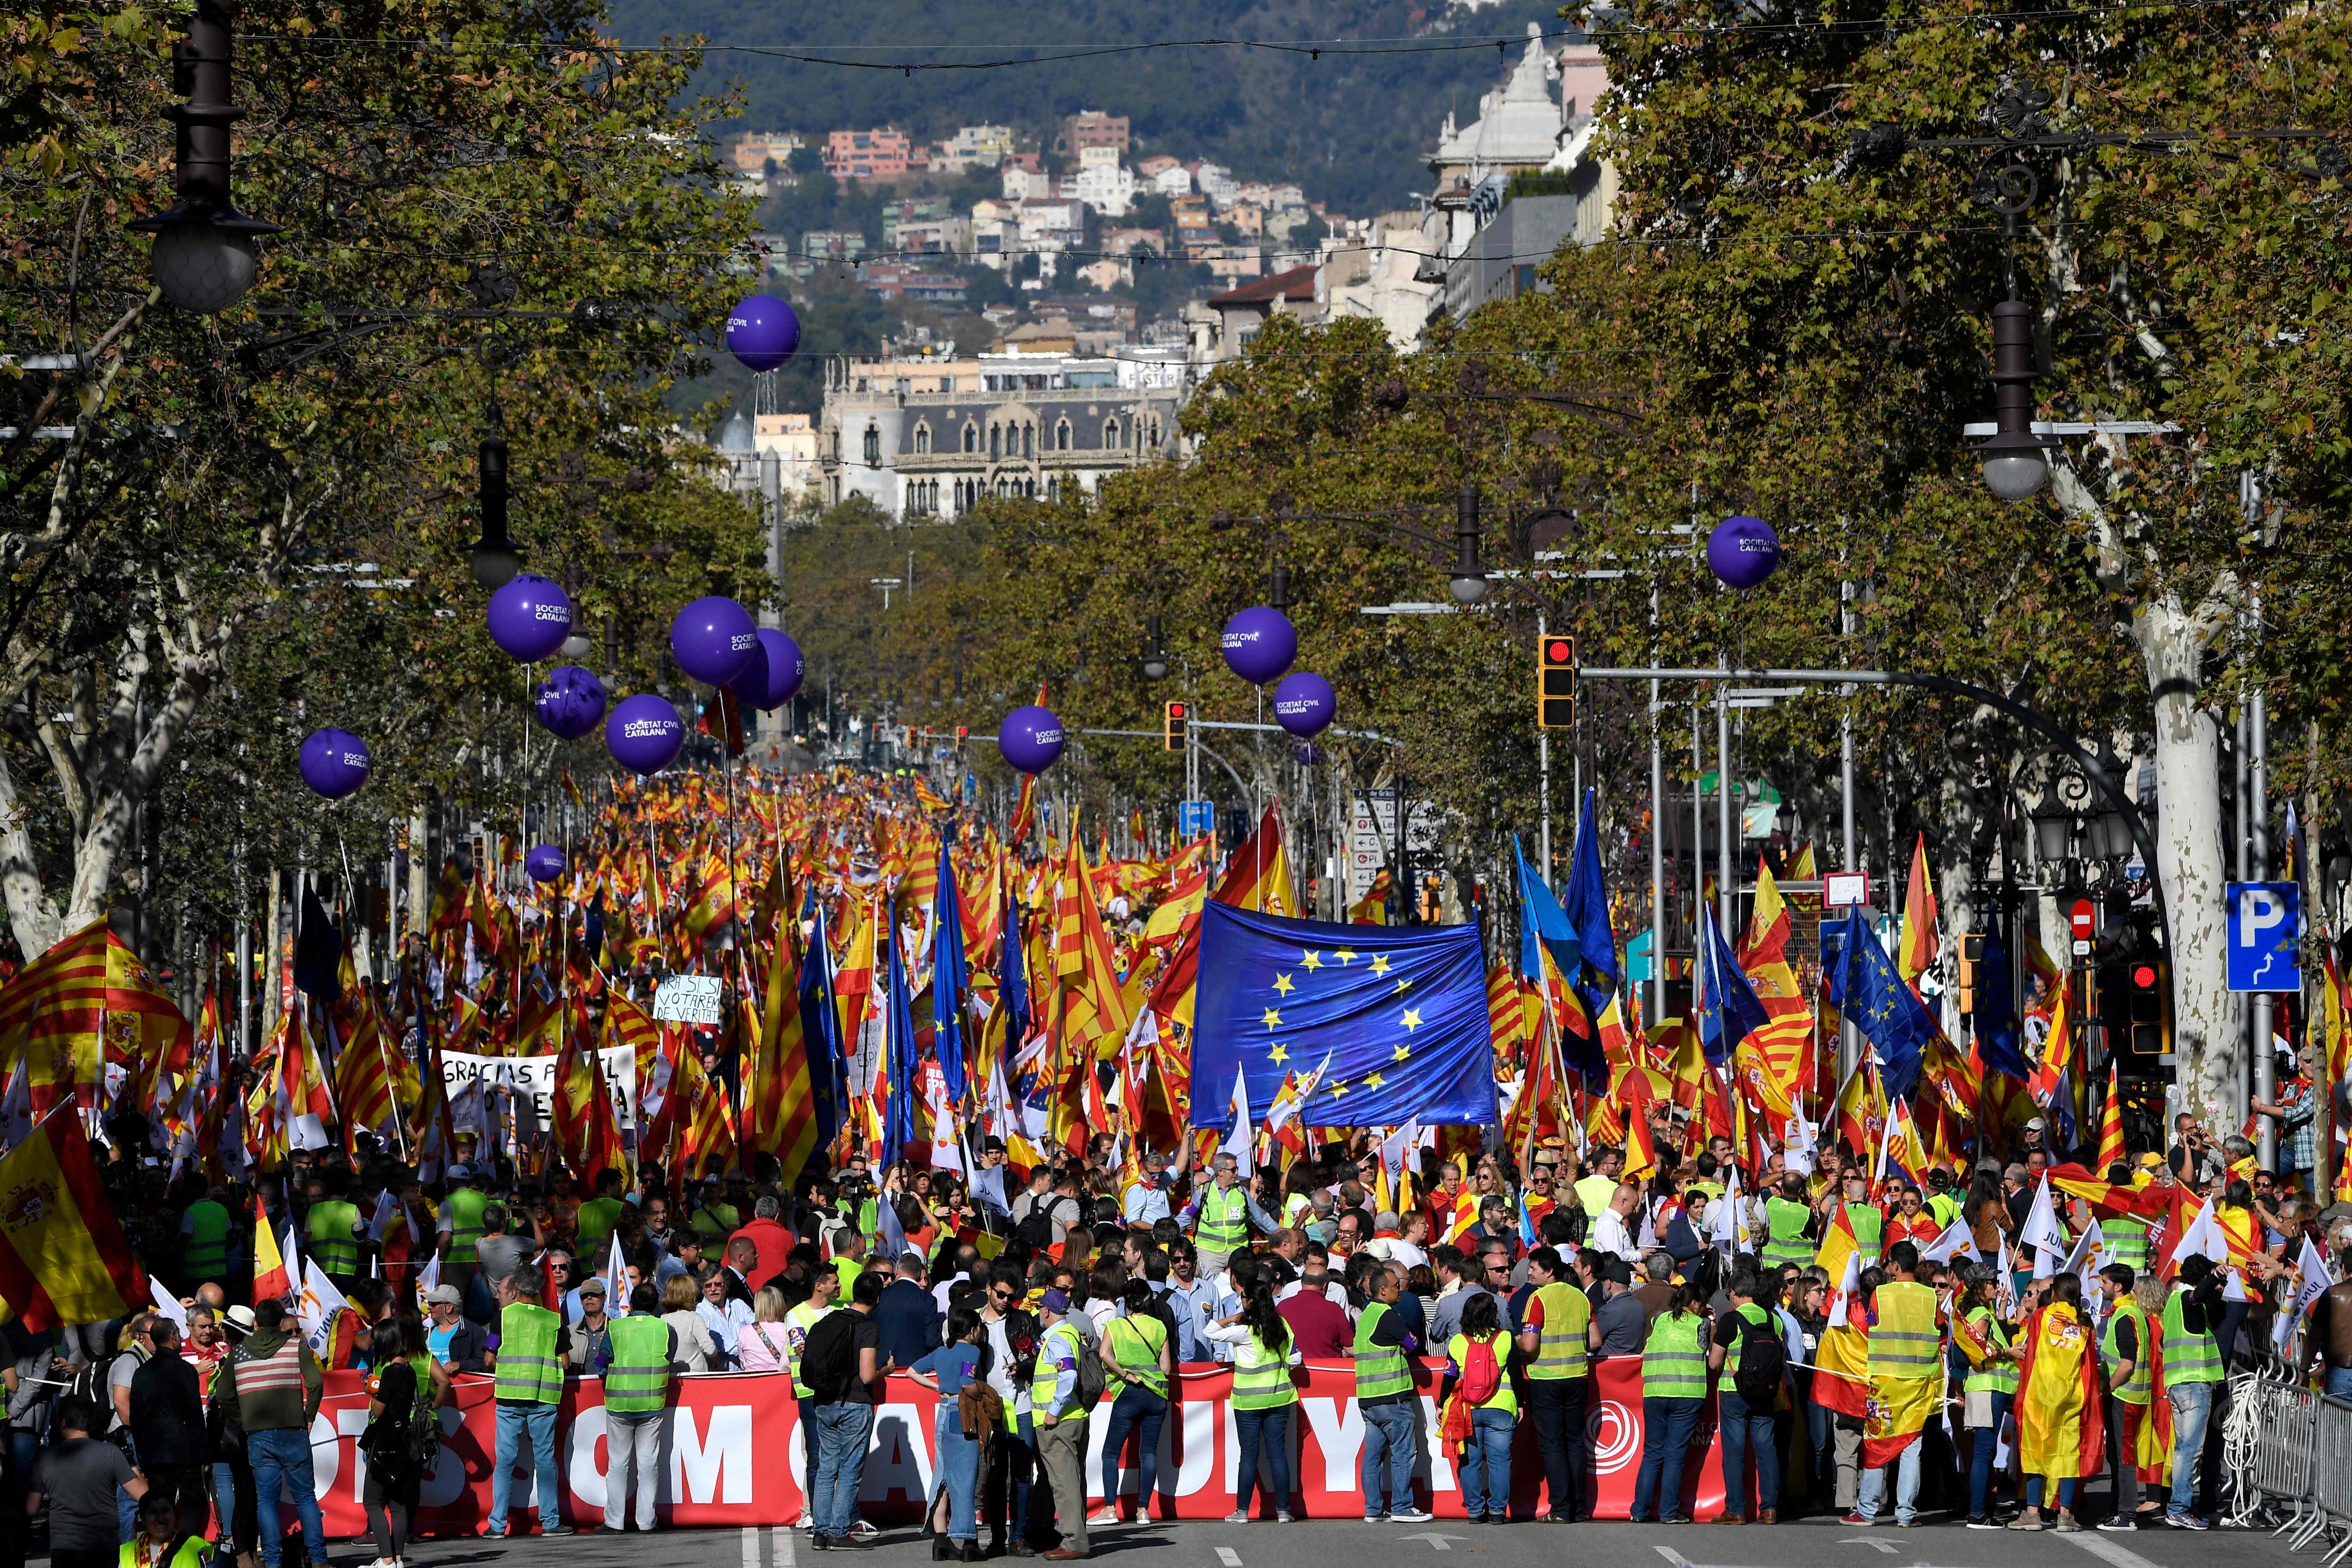 أعلام الاتحاد الأوروبى وإسبانيا فى مظاهرات ببرشلونة